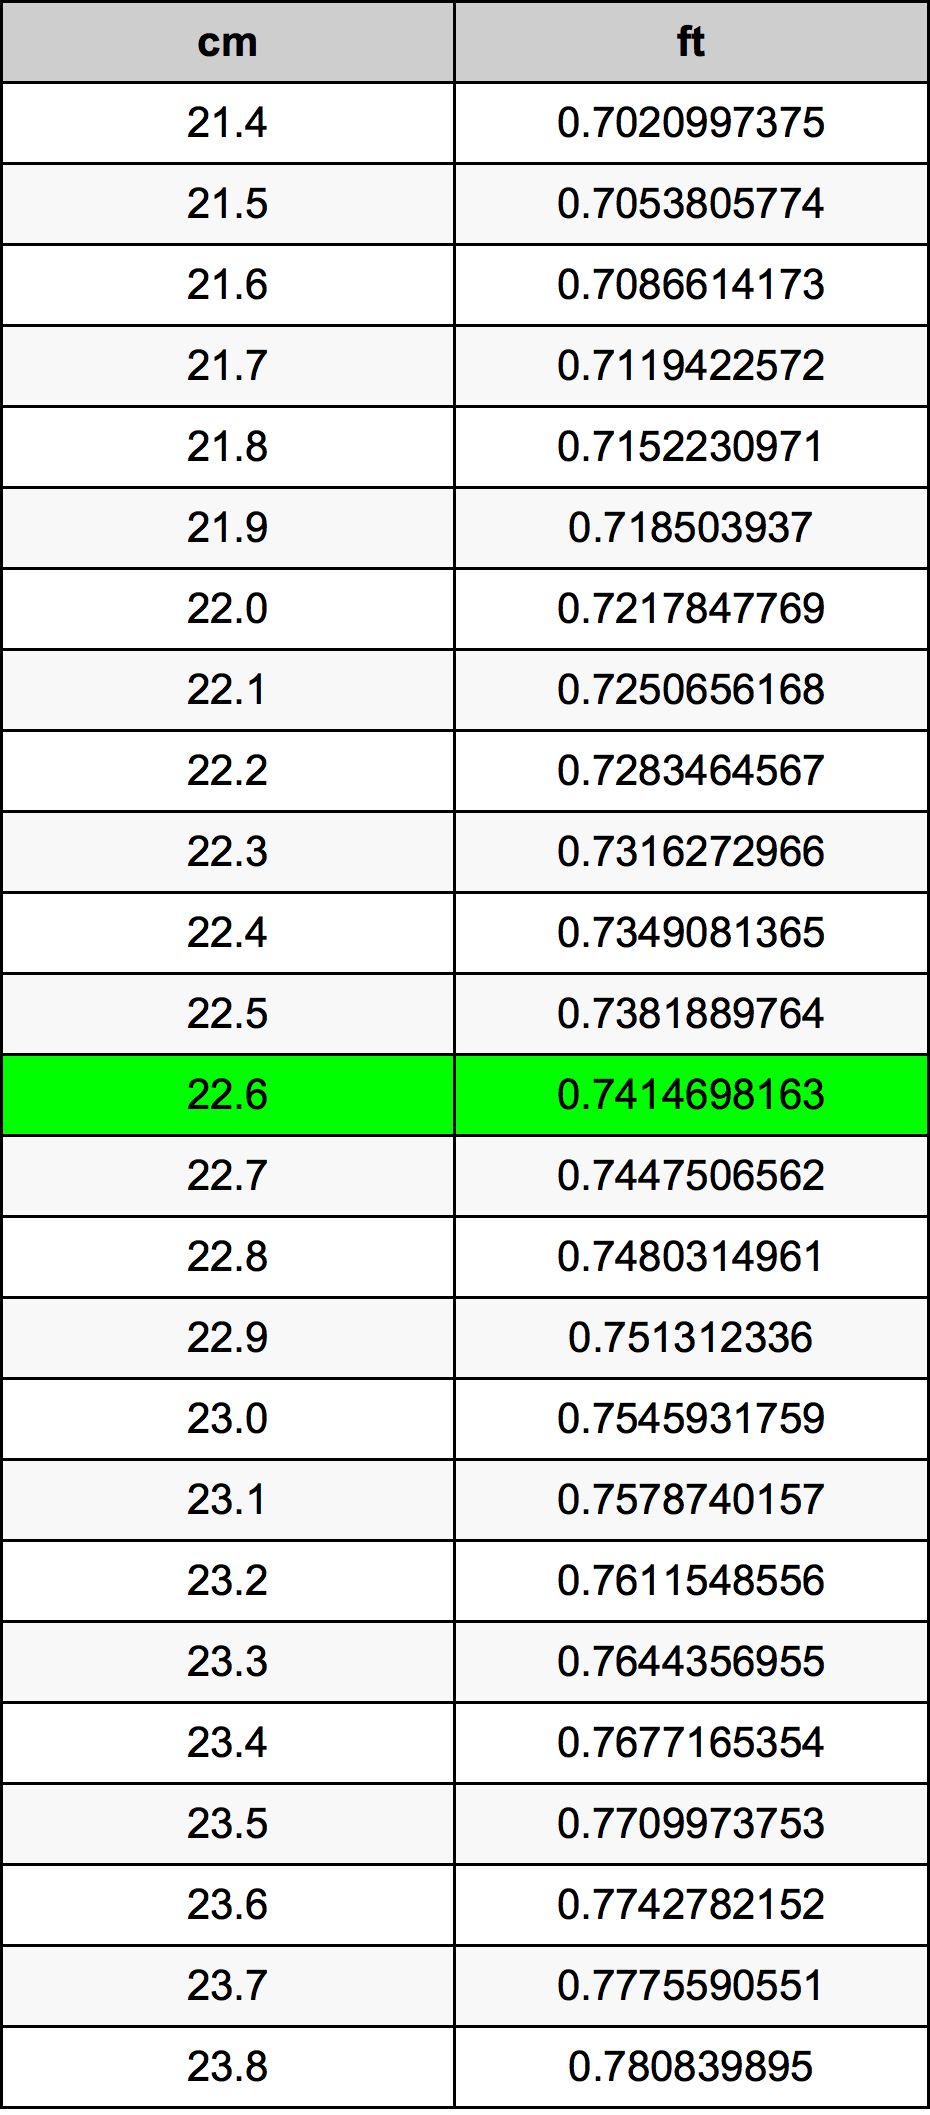 22.6 Centiméter átszámítási táblázat